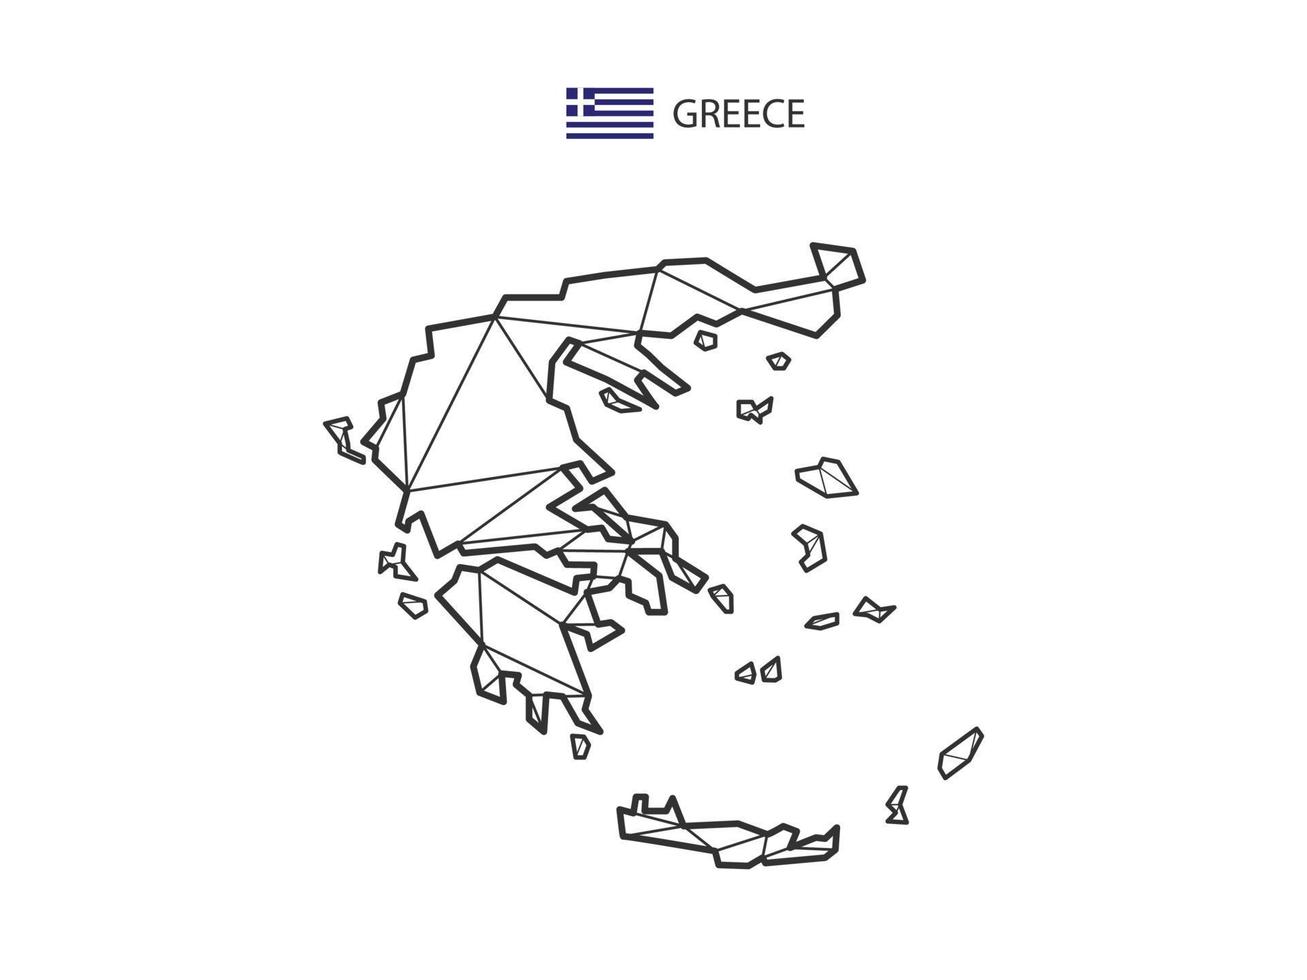 mosaico triángulos mapa estilo de grecia aislado sobre un fondo blanco. diseño abstracto para vectores. vector